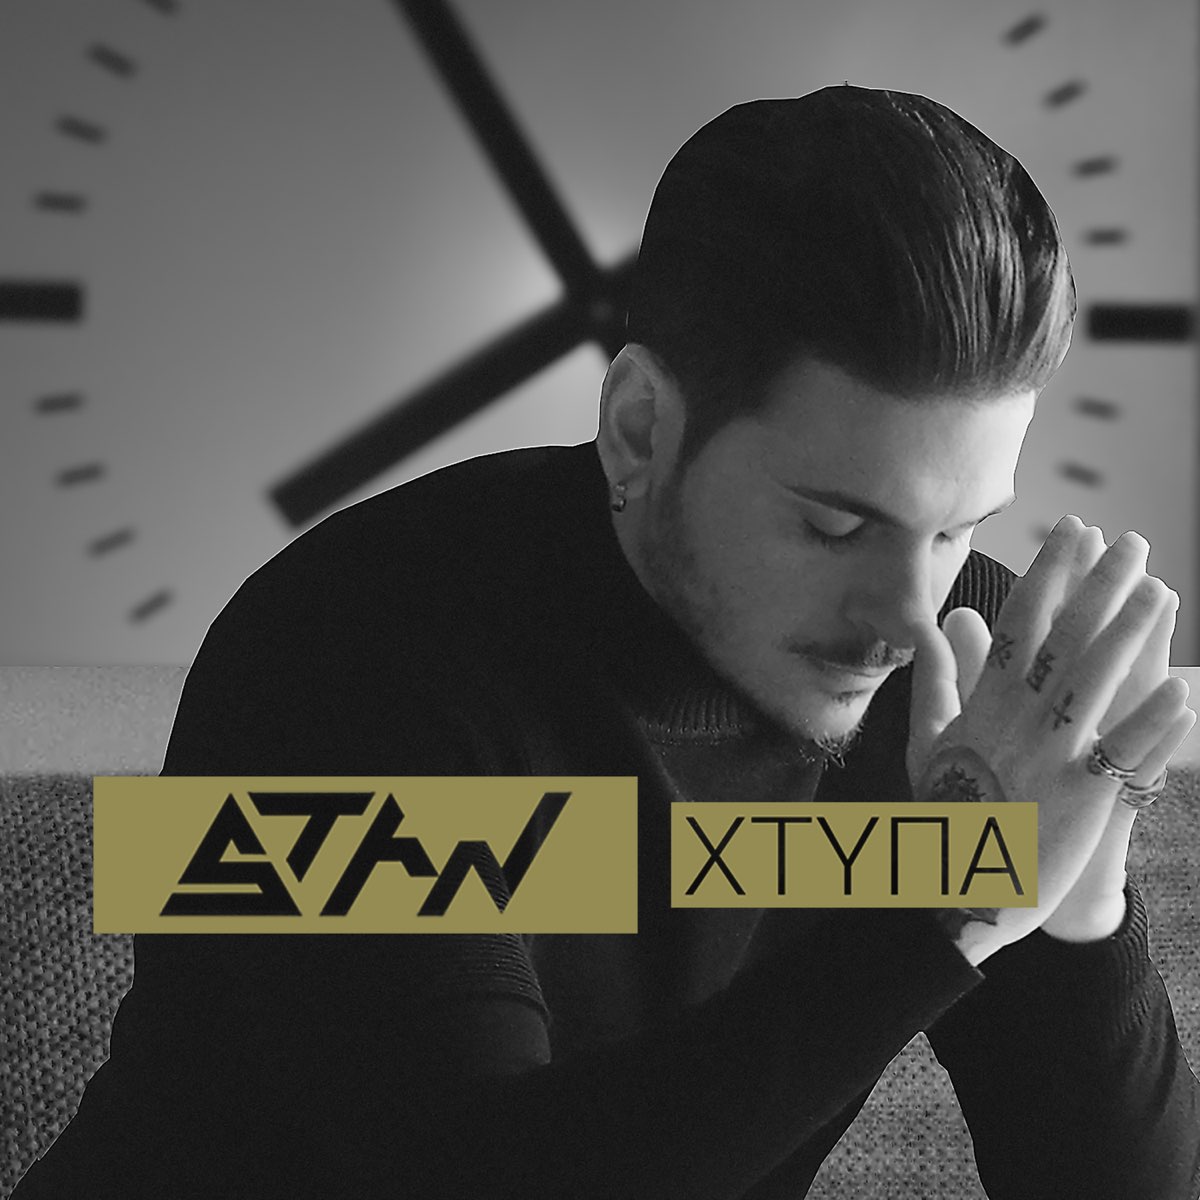 Xtypa - Single by Stan on Apple Music